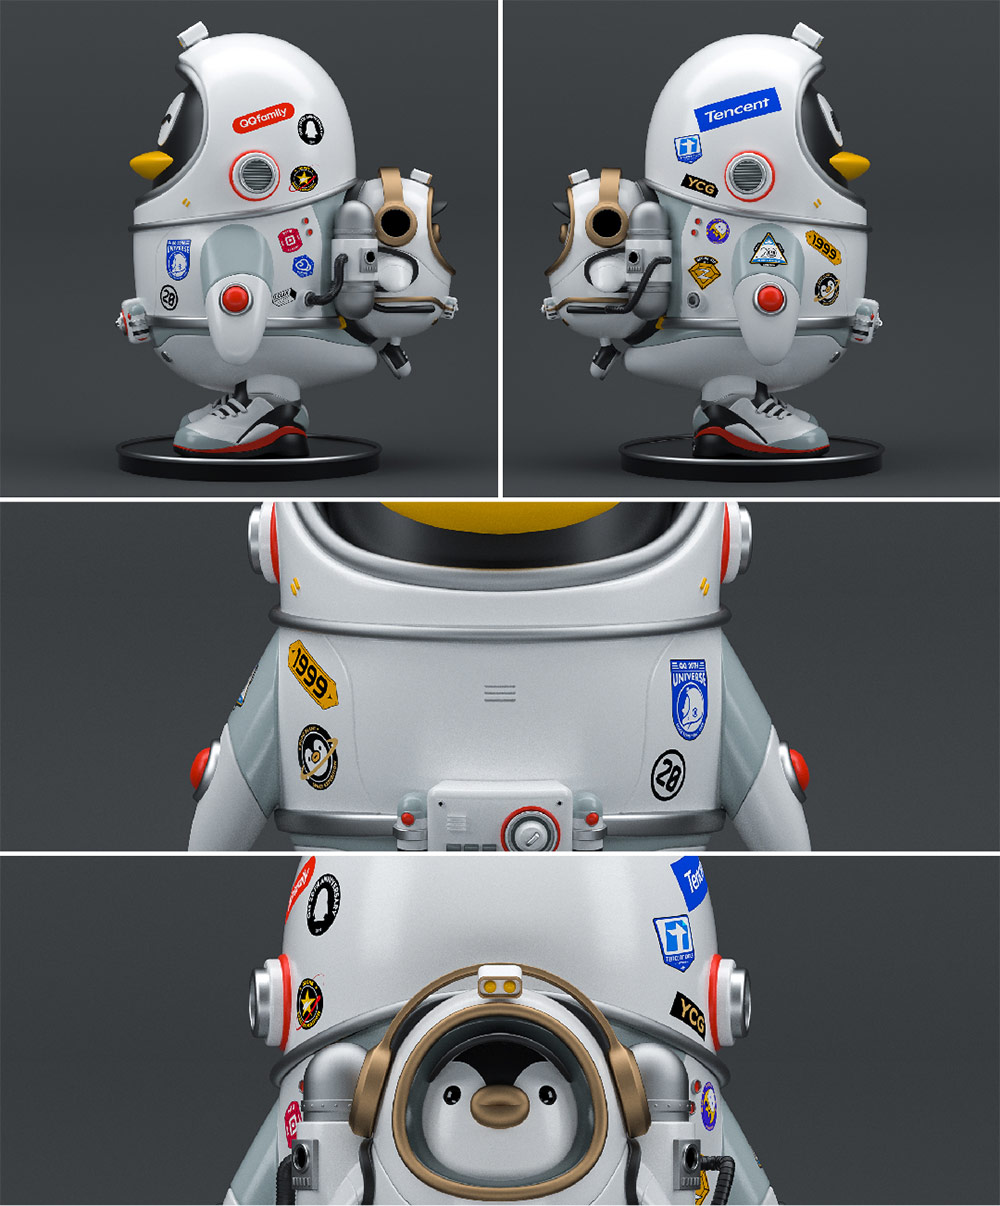 太空企鵝探索科技，騰訊QQ 20周年主題形象設計